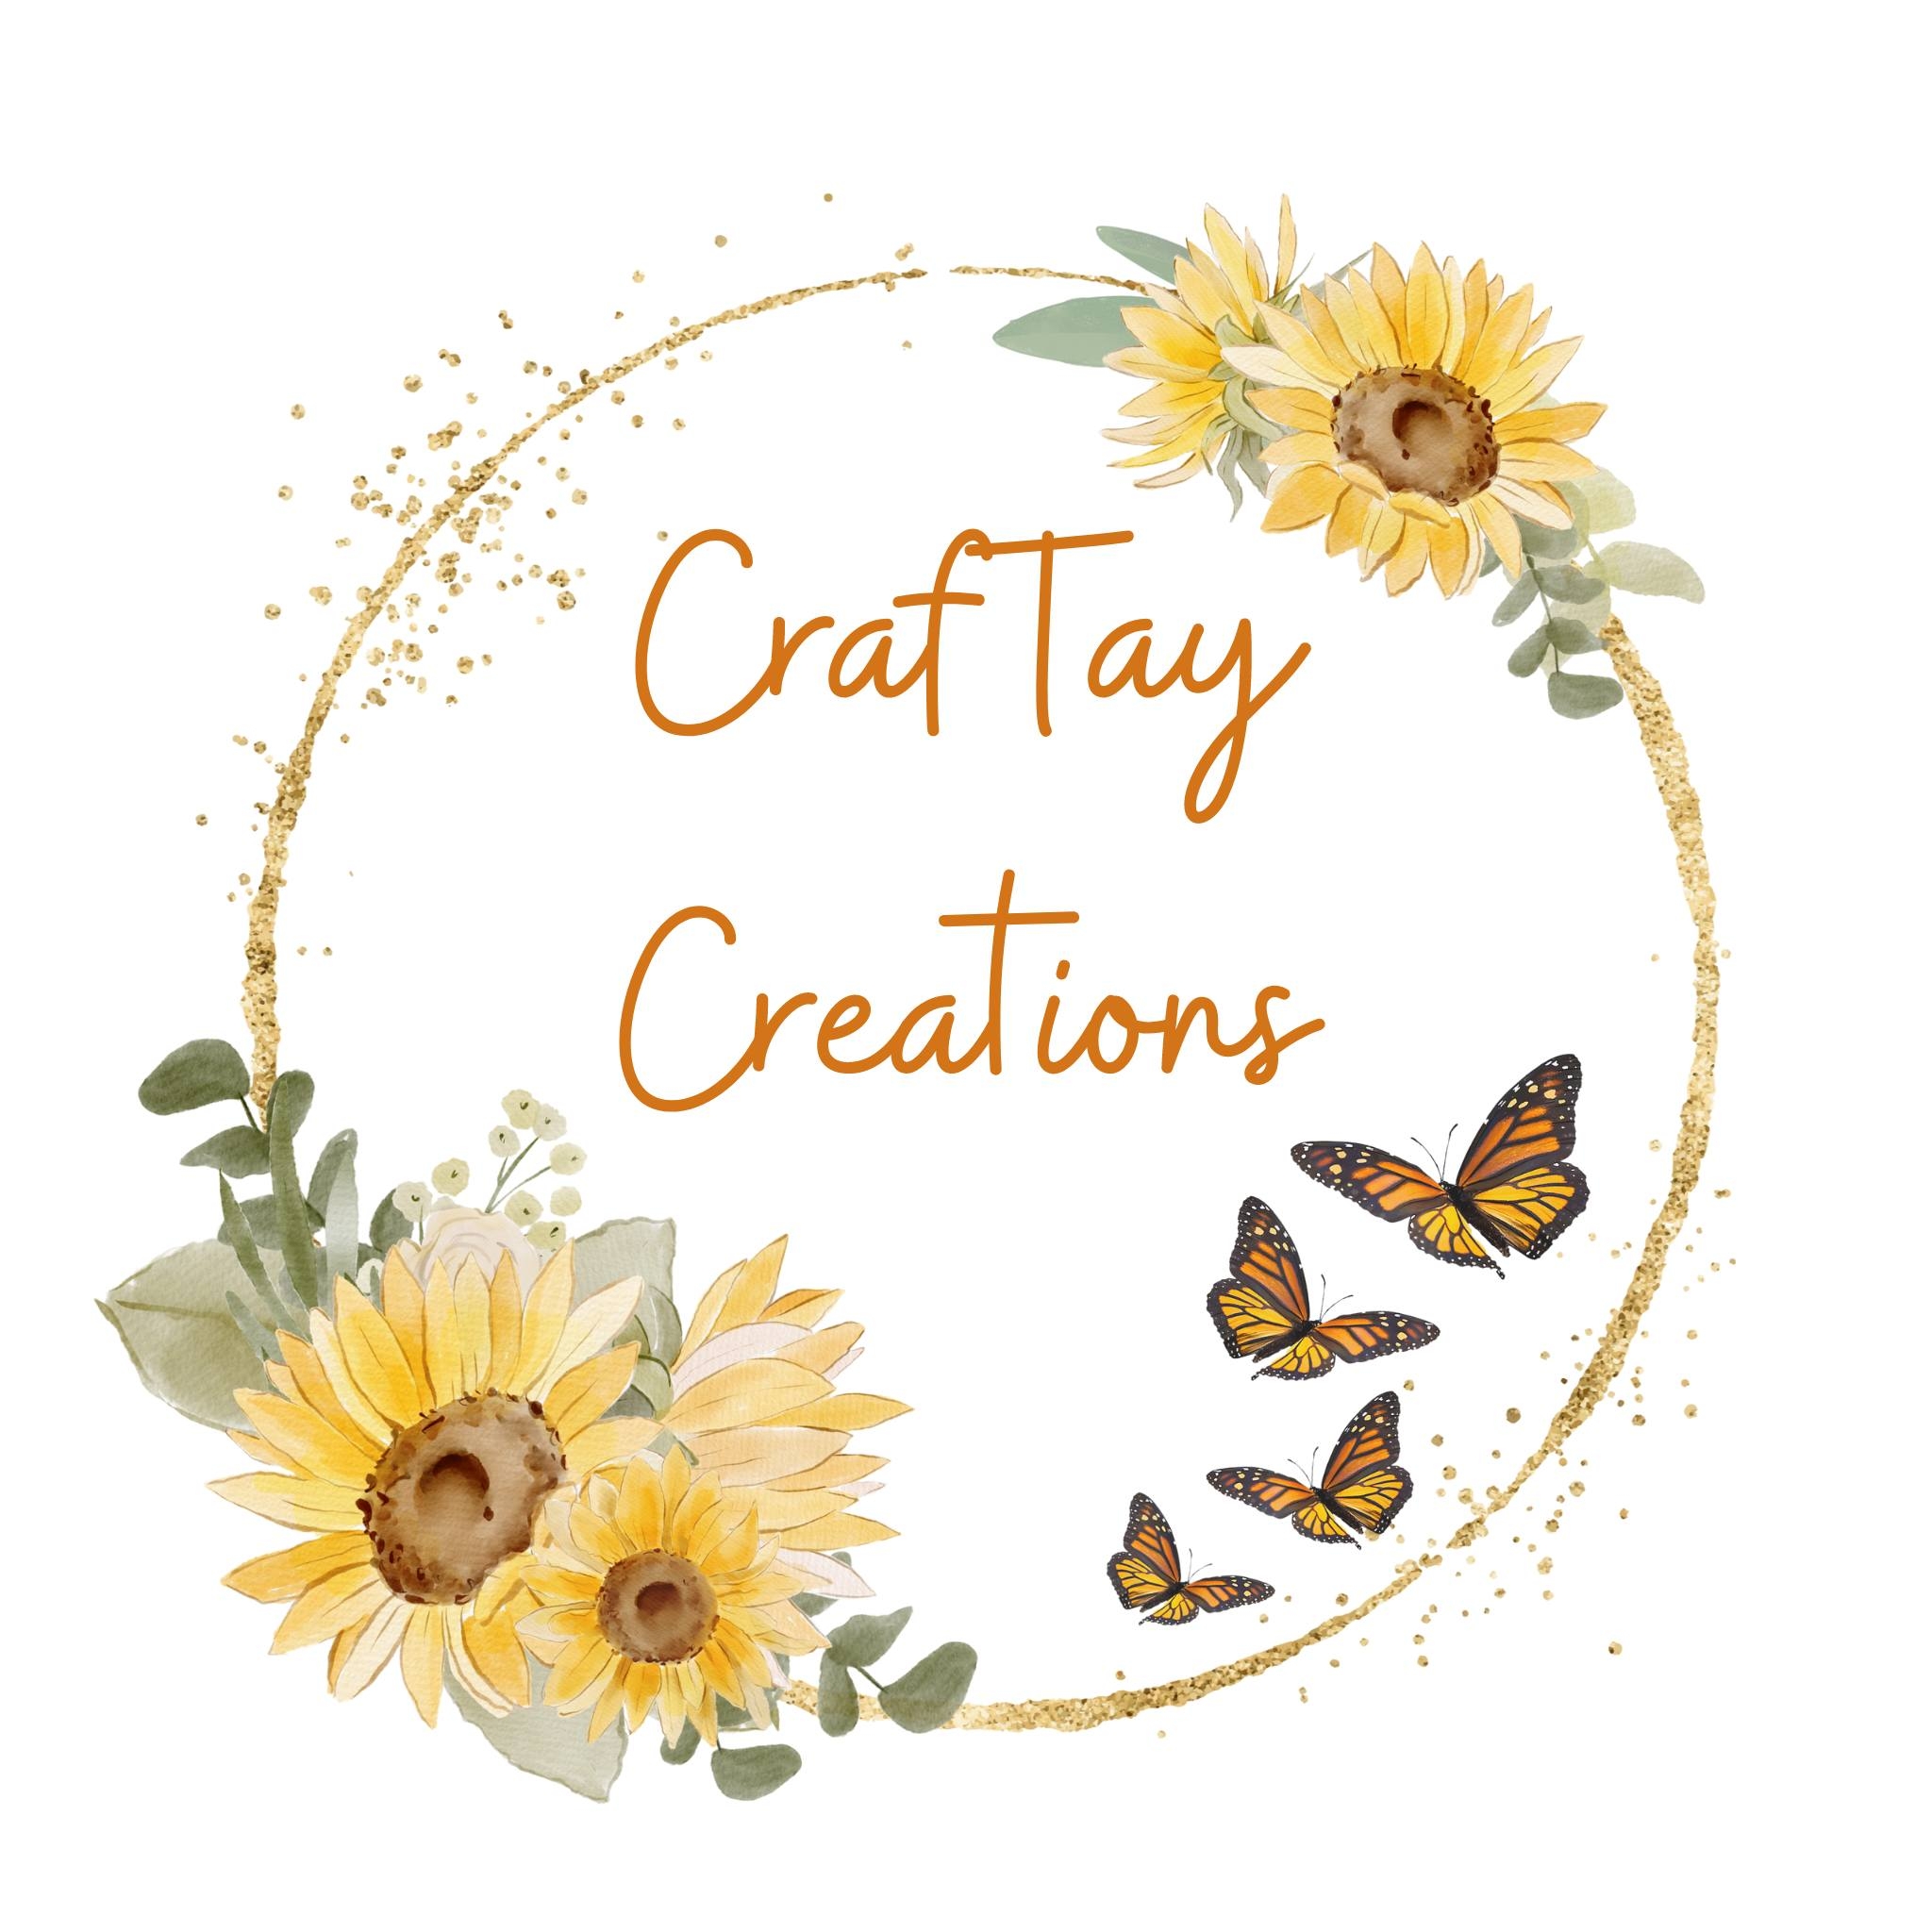 Craf Tay Creations